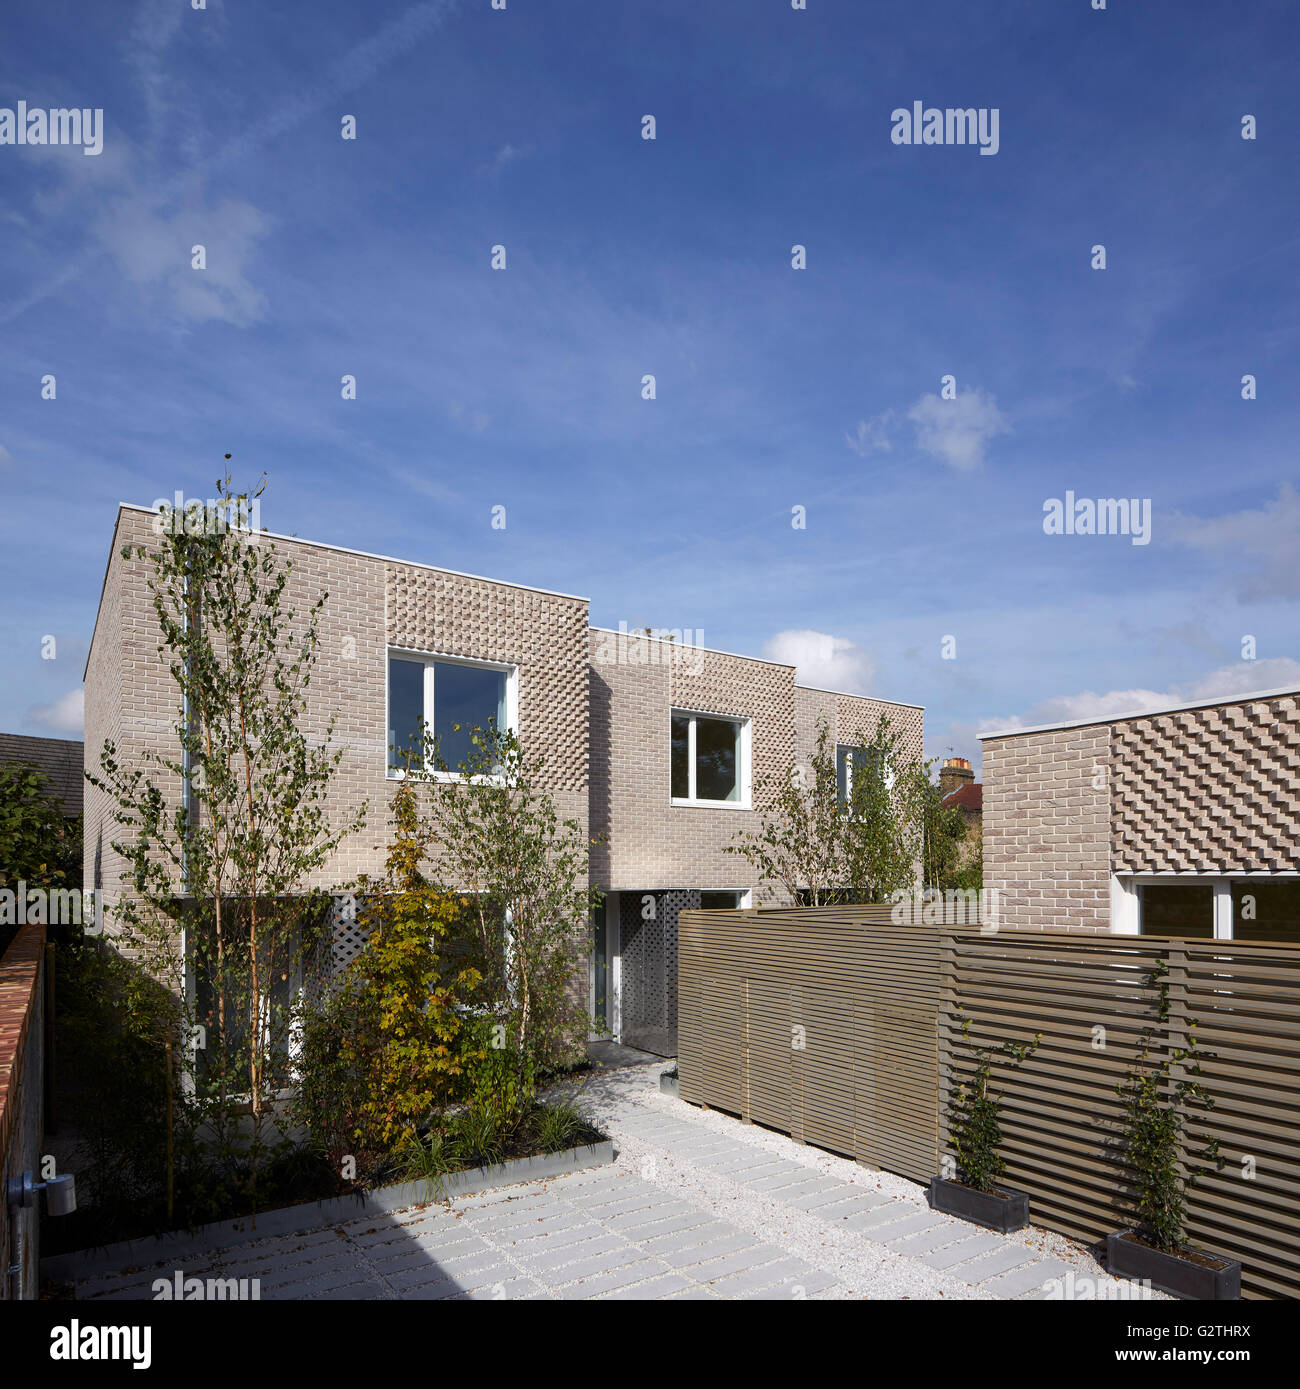 Gesamtansicht. Hindman des Yard, London, Vereinigtes Königreich. Architekt: Foster Lomas, 2015. Stockfoto